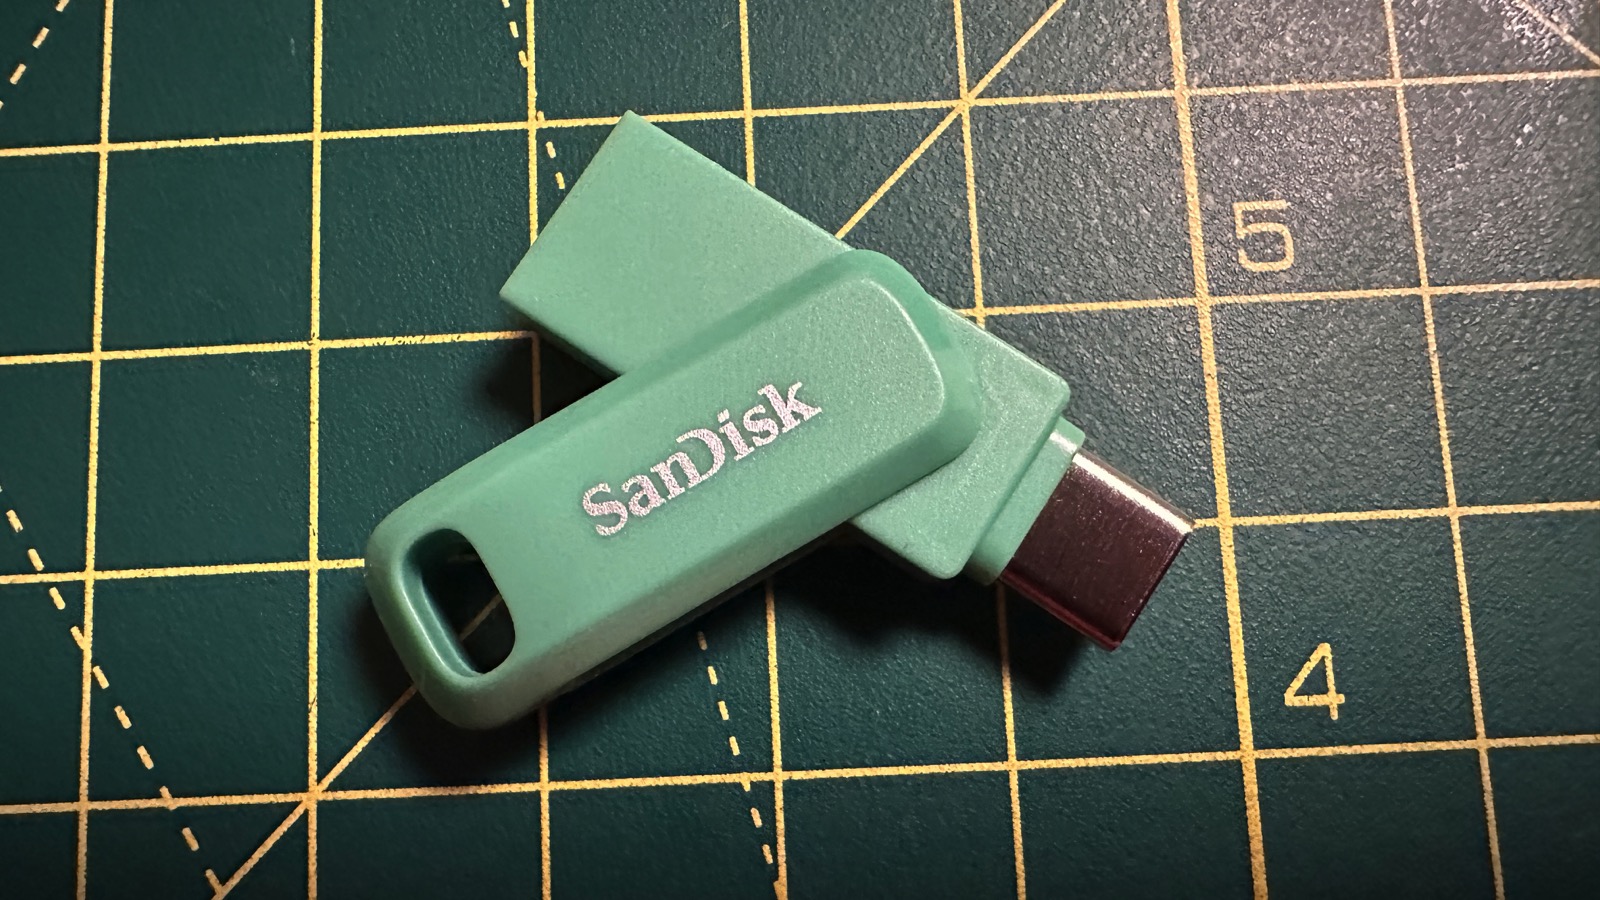 La clé USB SanDisk Ultra Flair 256 Go est à prix ridicule, on ne pouvait  pas rêver mieux (-65%)